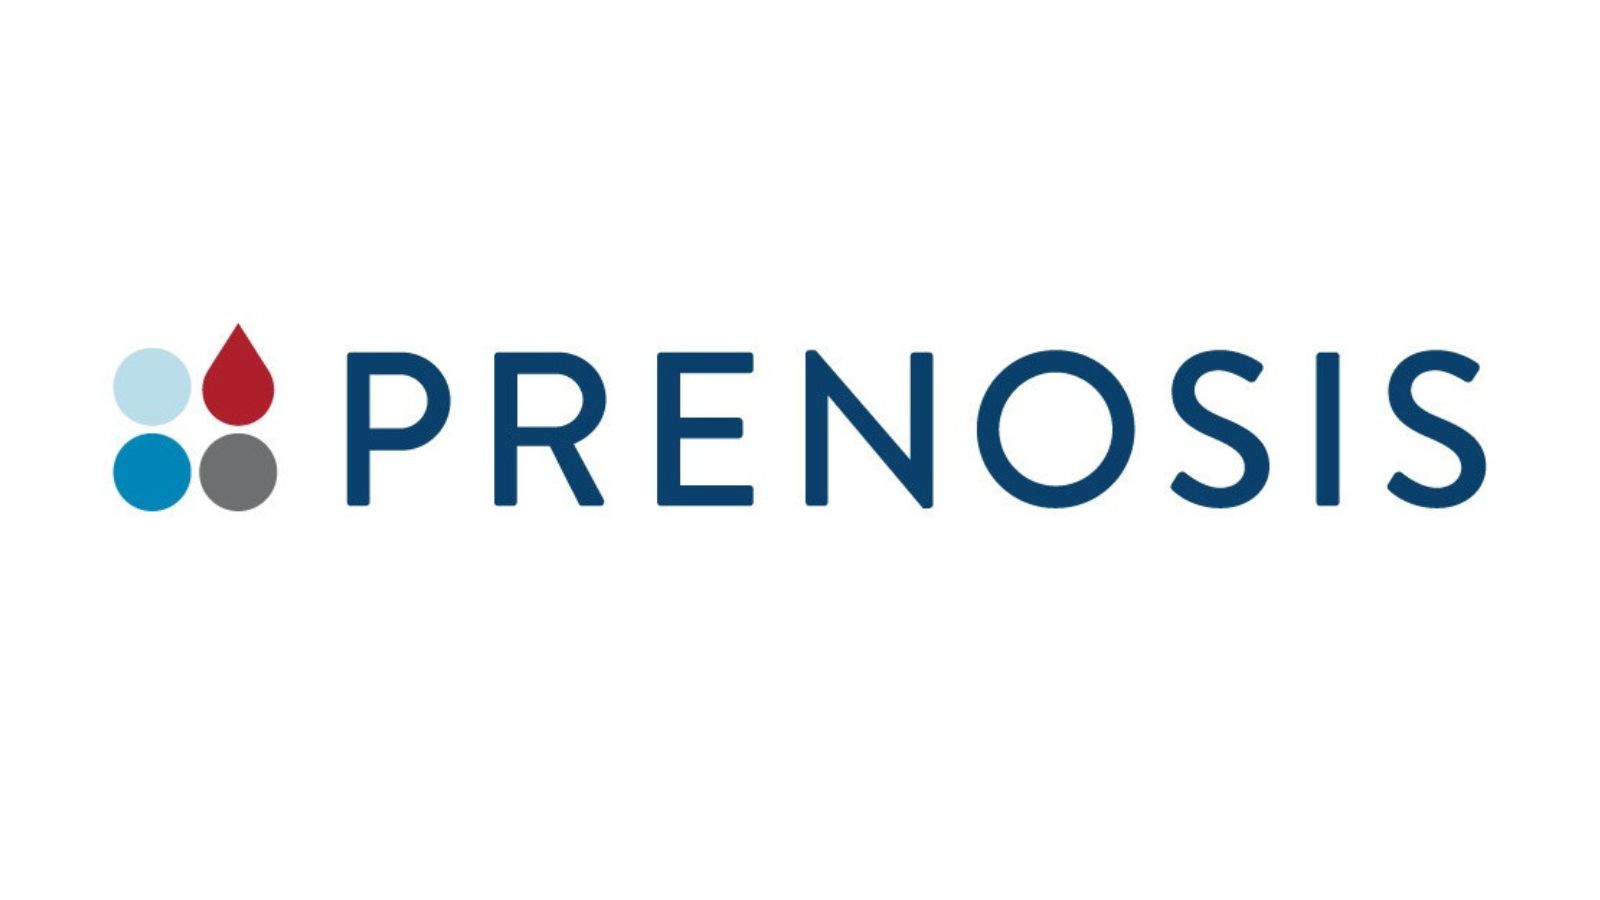 Prenosis Awards $4.8M in NIH Grants to Enable Precision Medicine for Sepsis